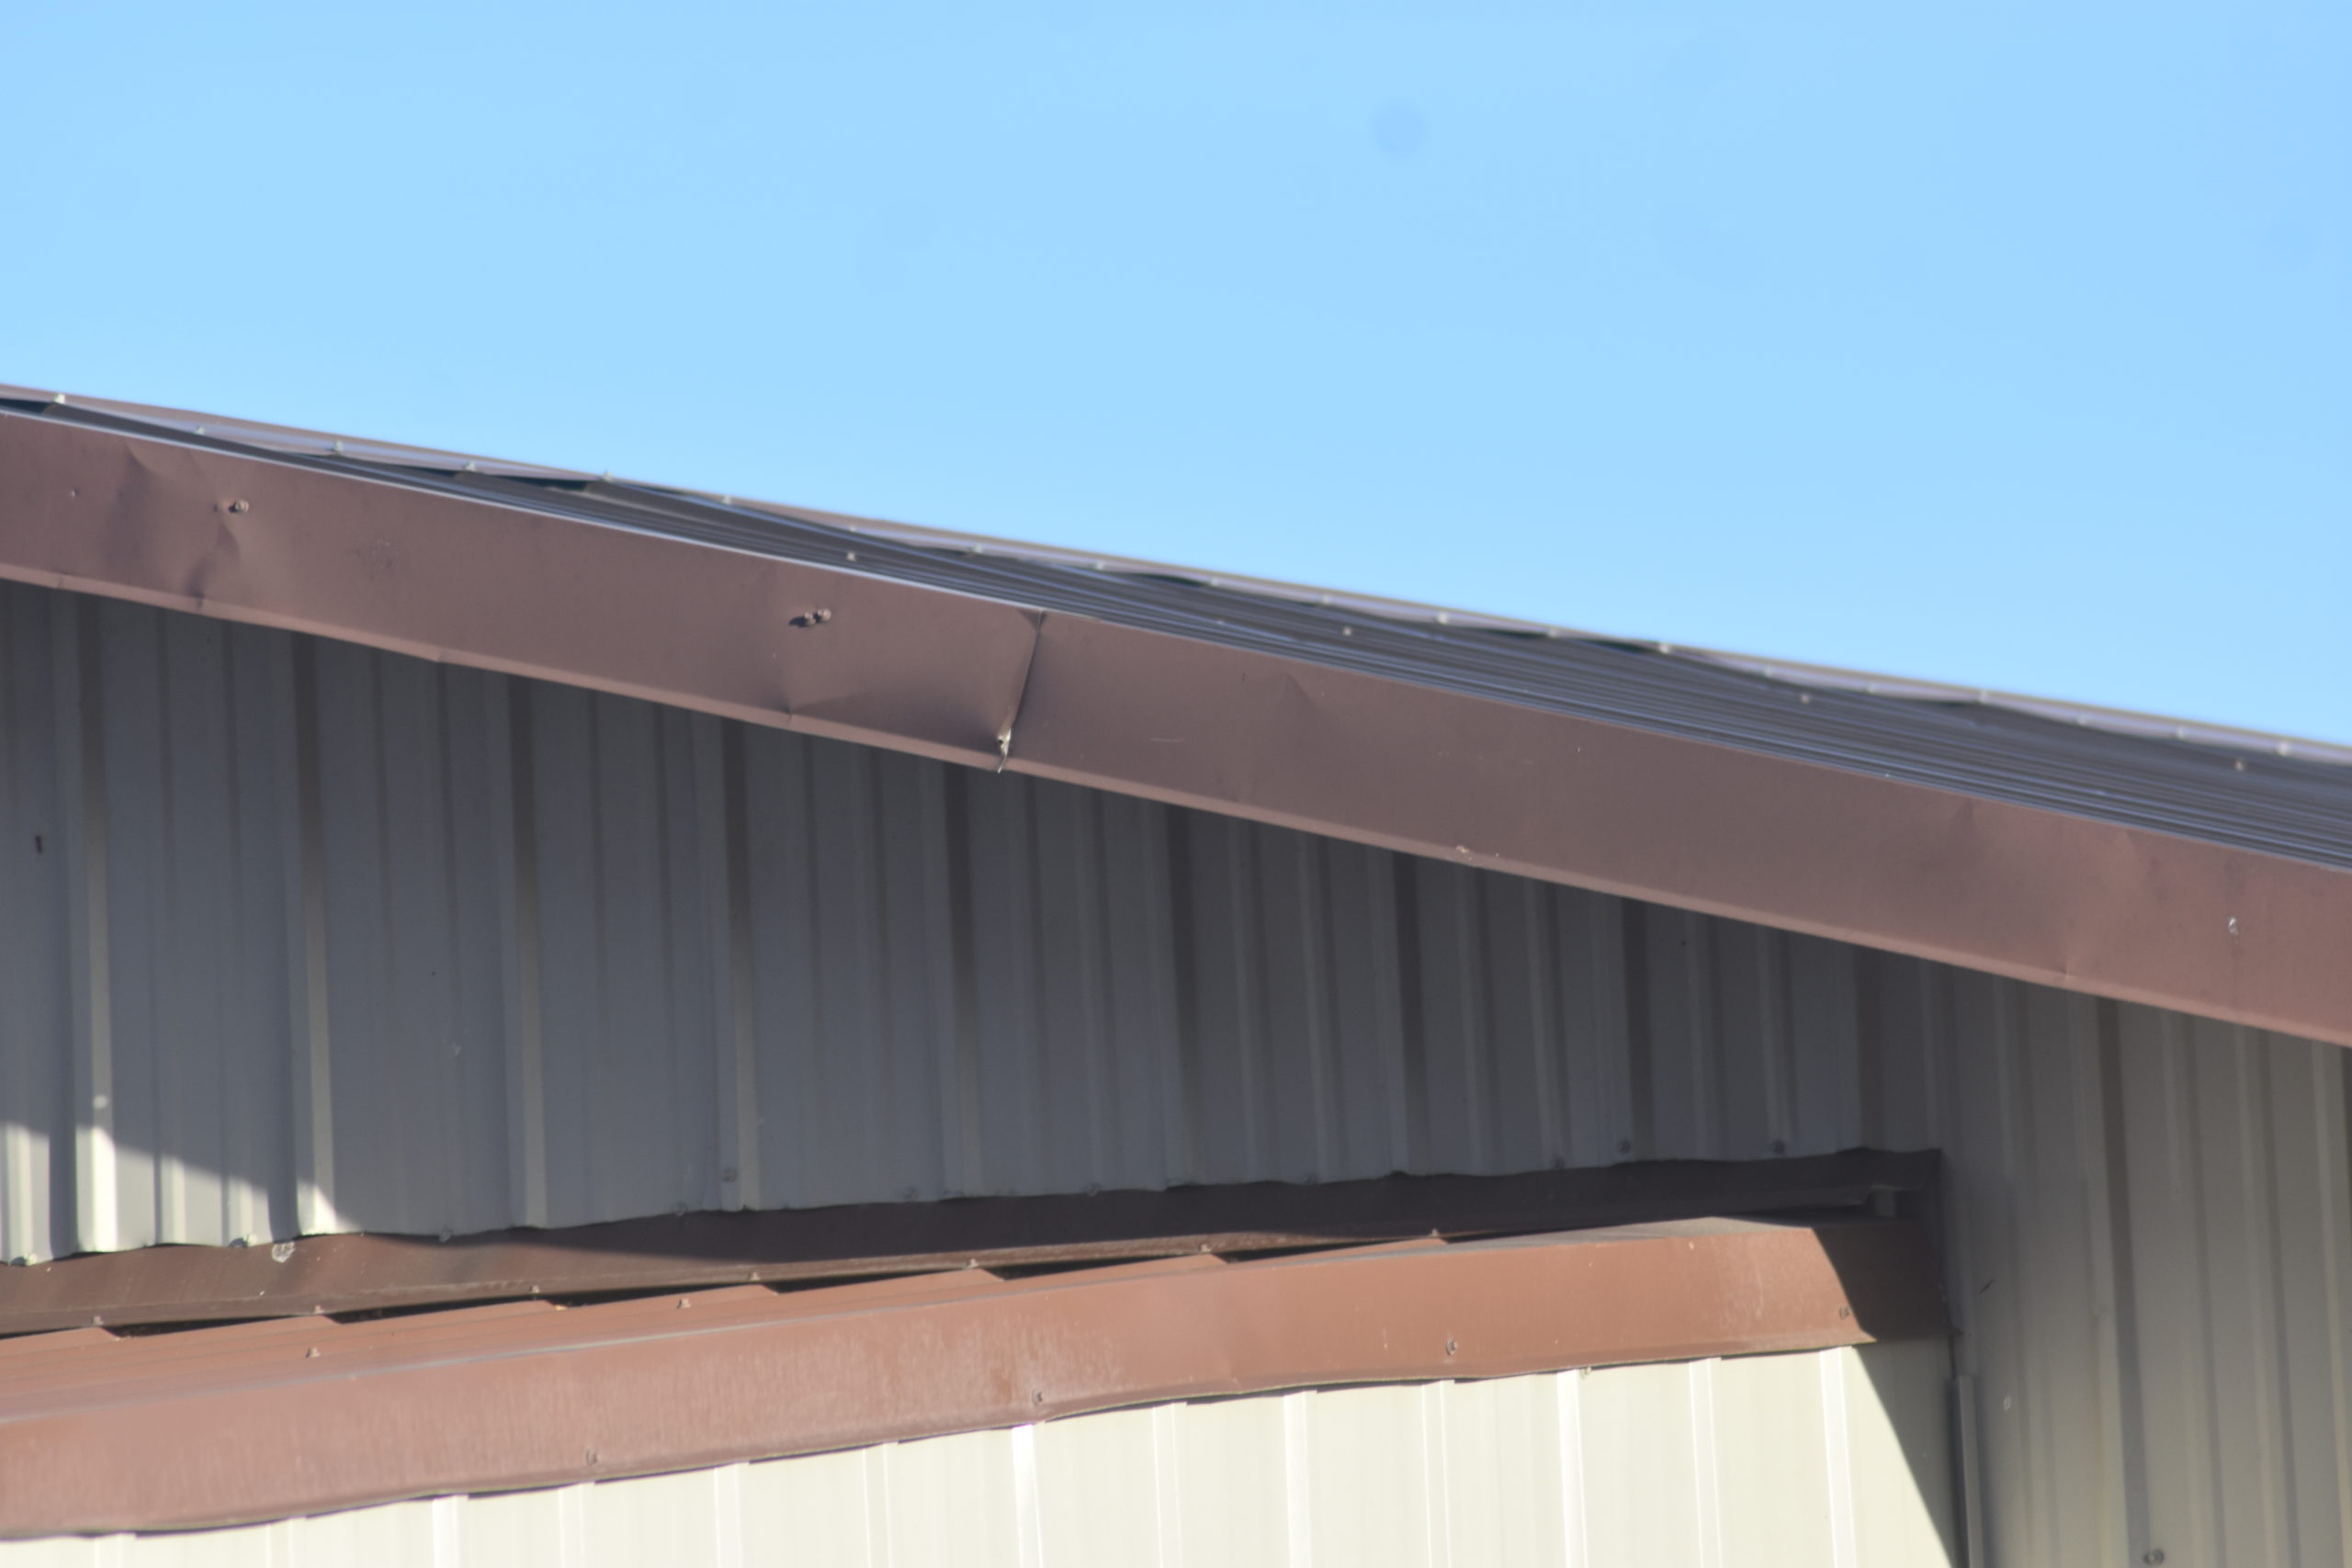 metal roofing